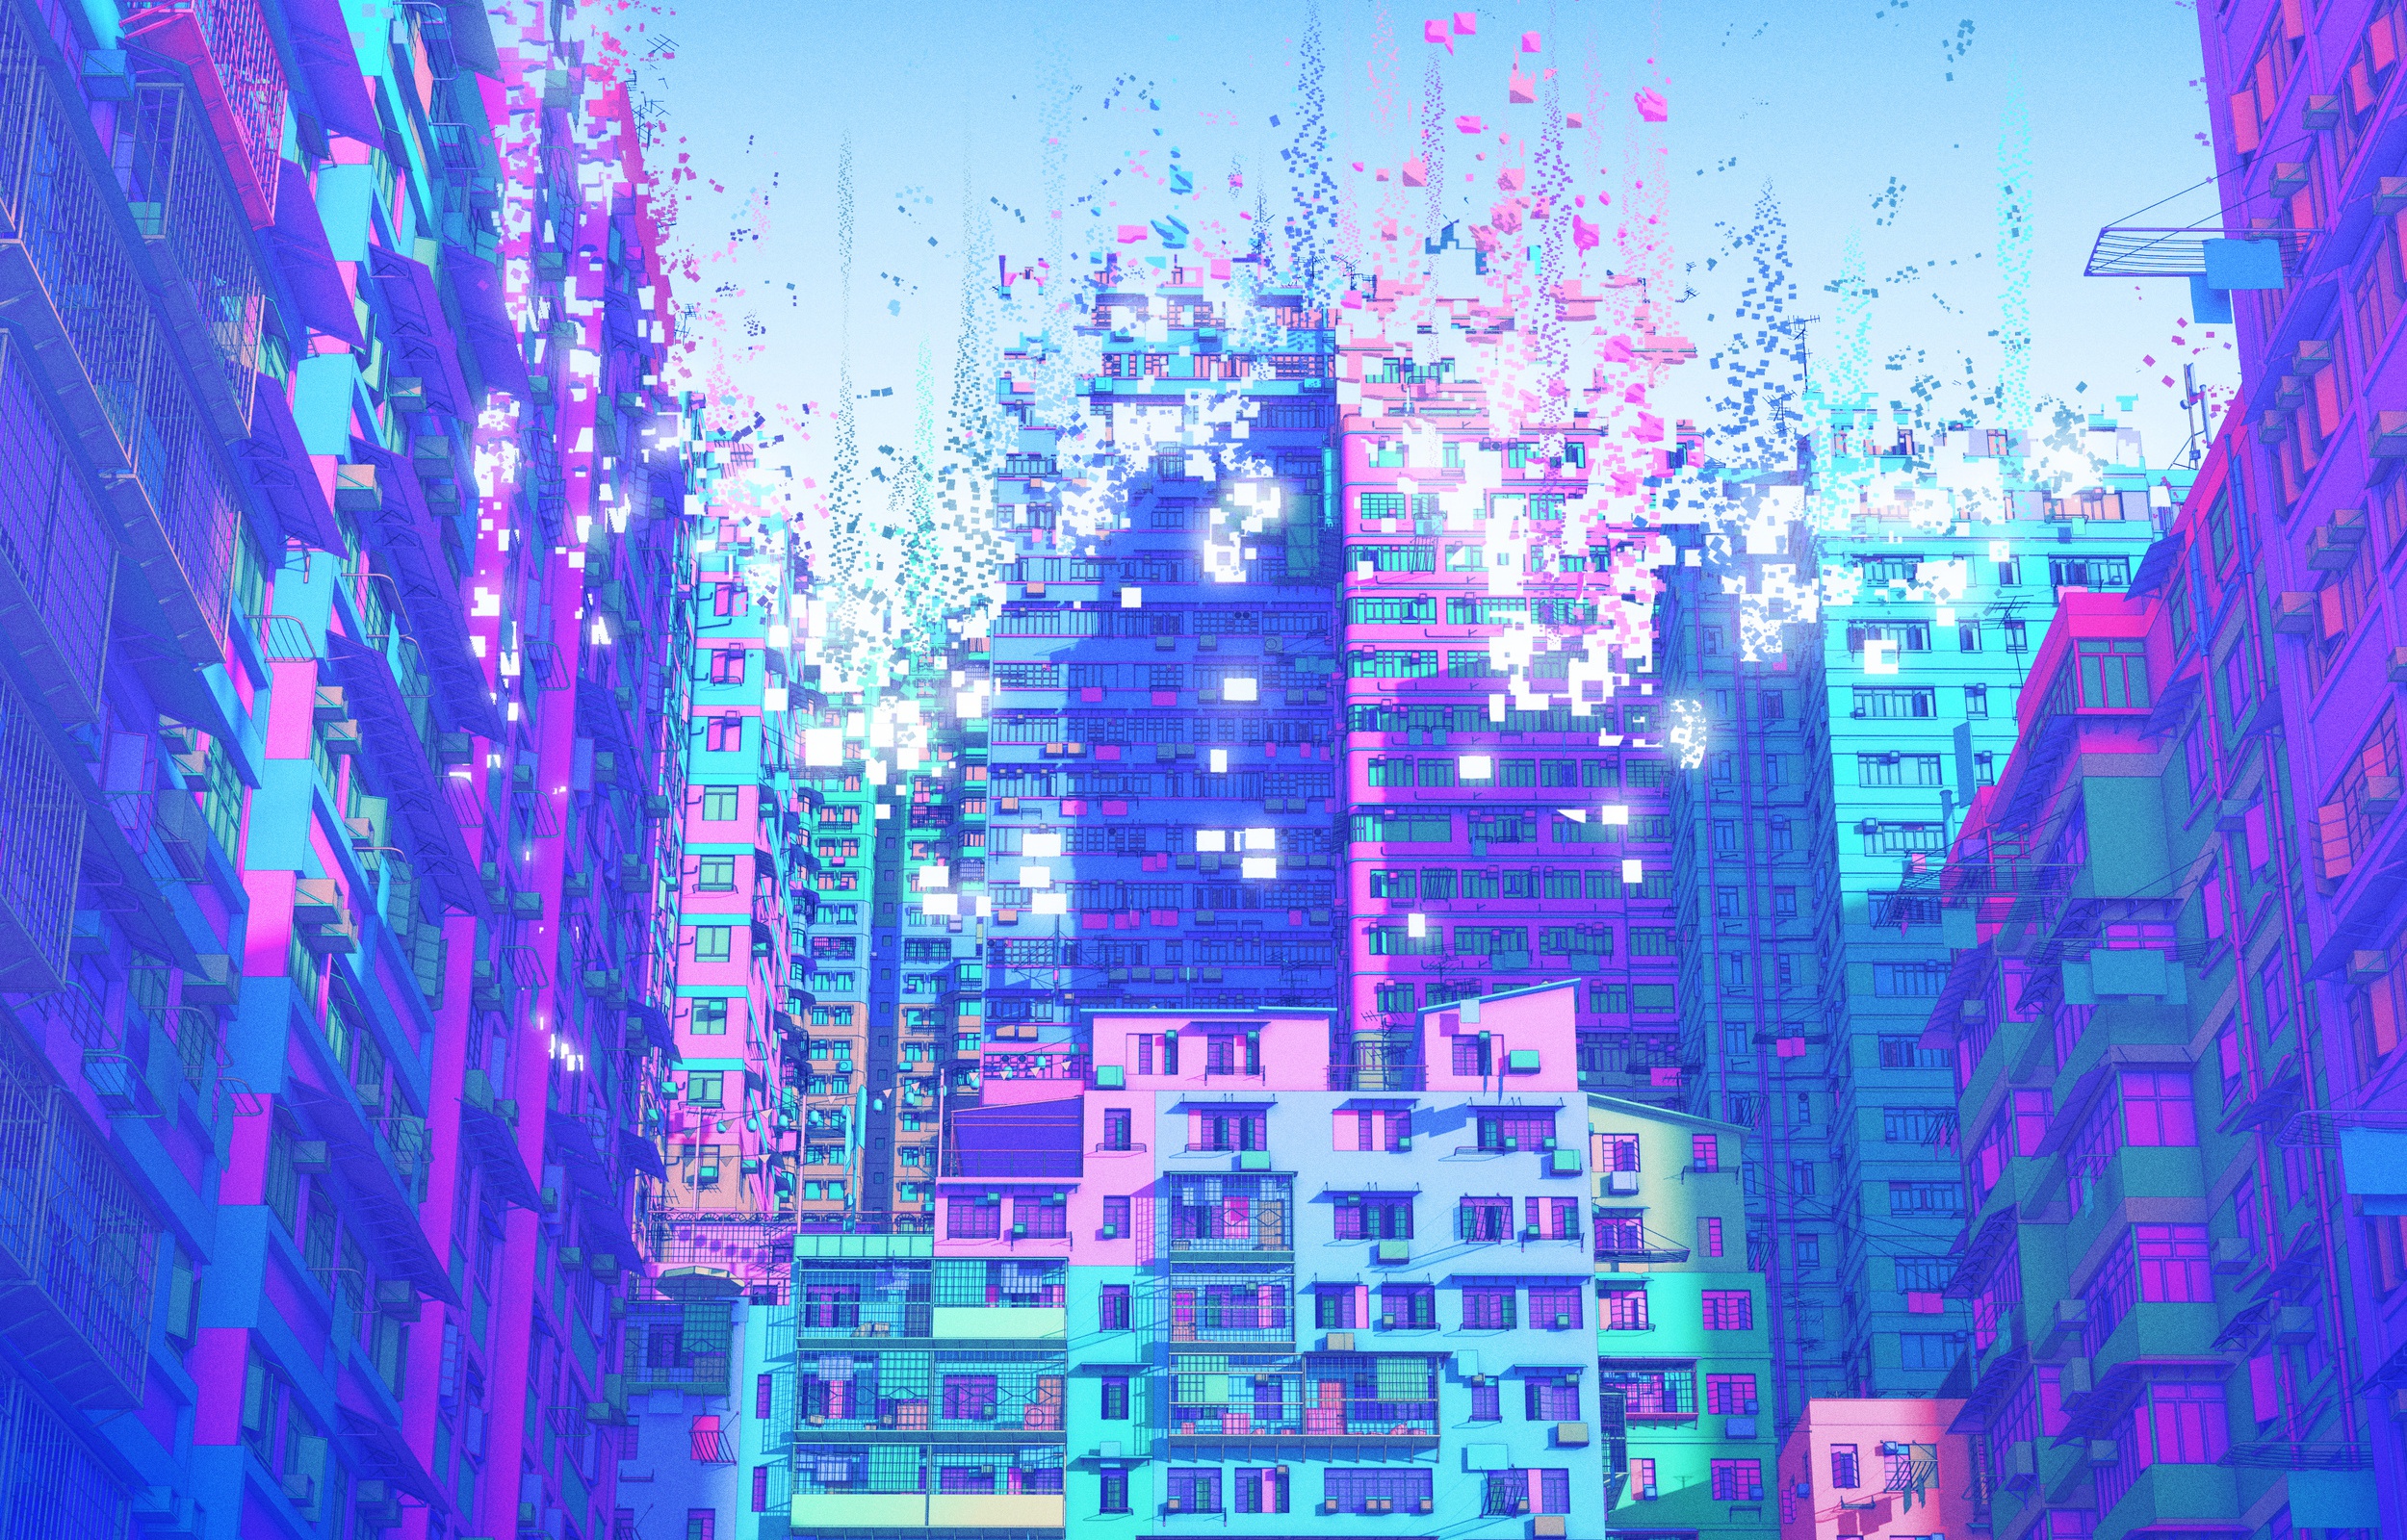 General 2500x1600 colorful digital art artwork city cityscape purple Nick Sullo